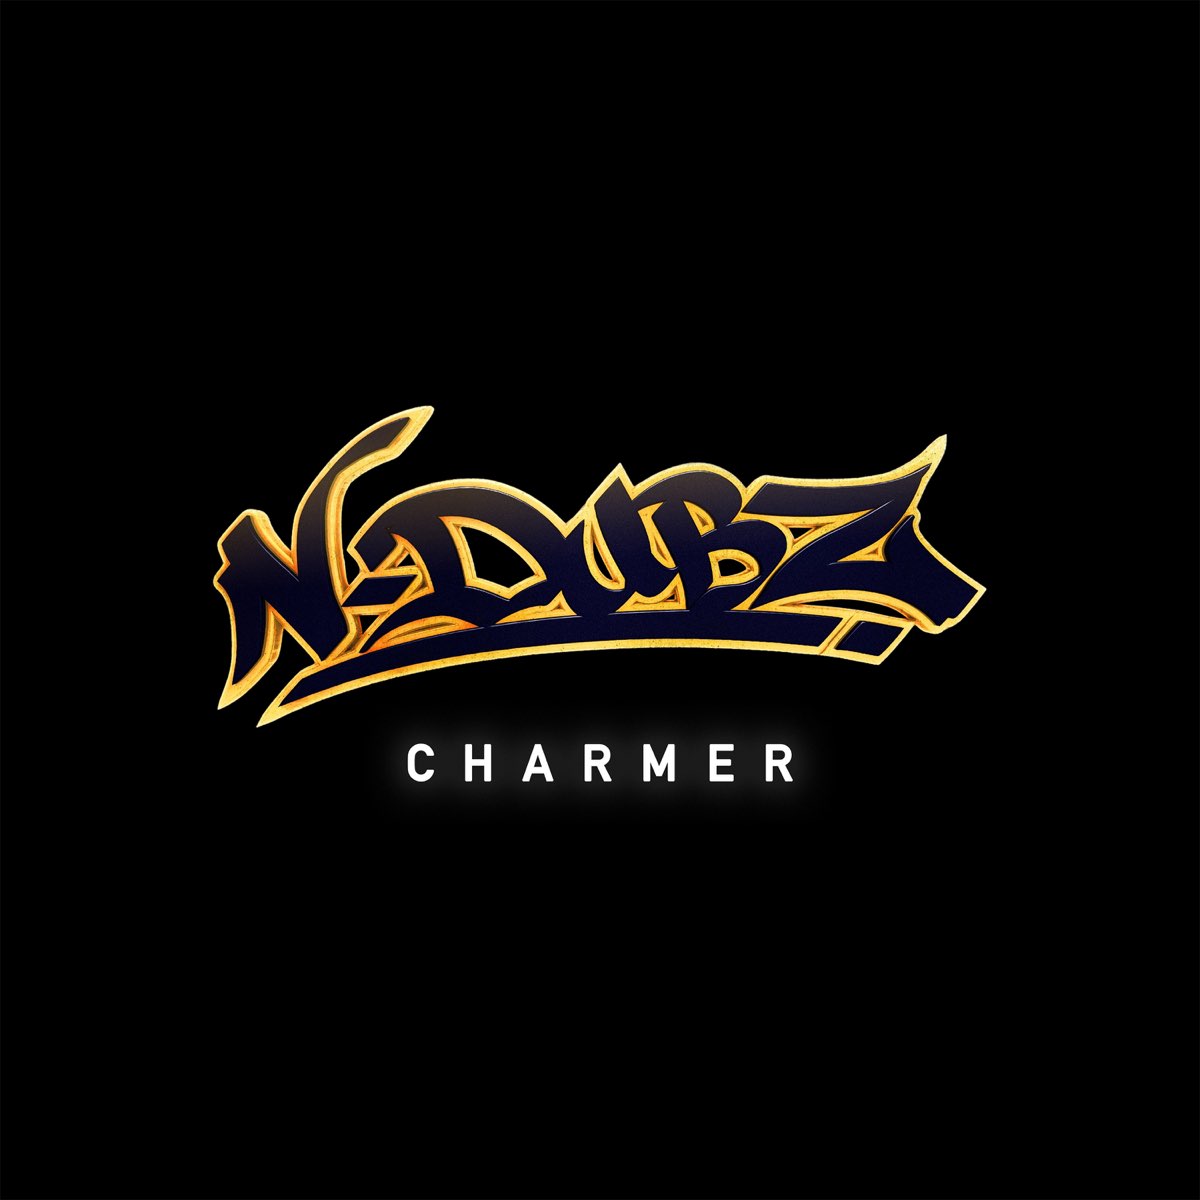 N-Dubz — Charmer cover artwork